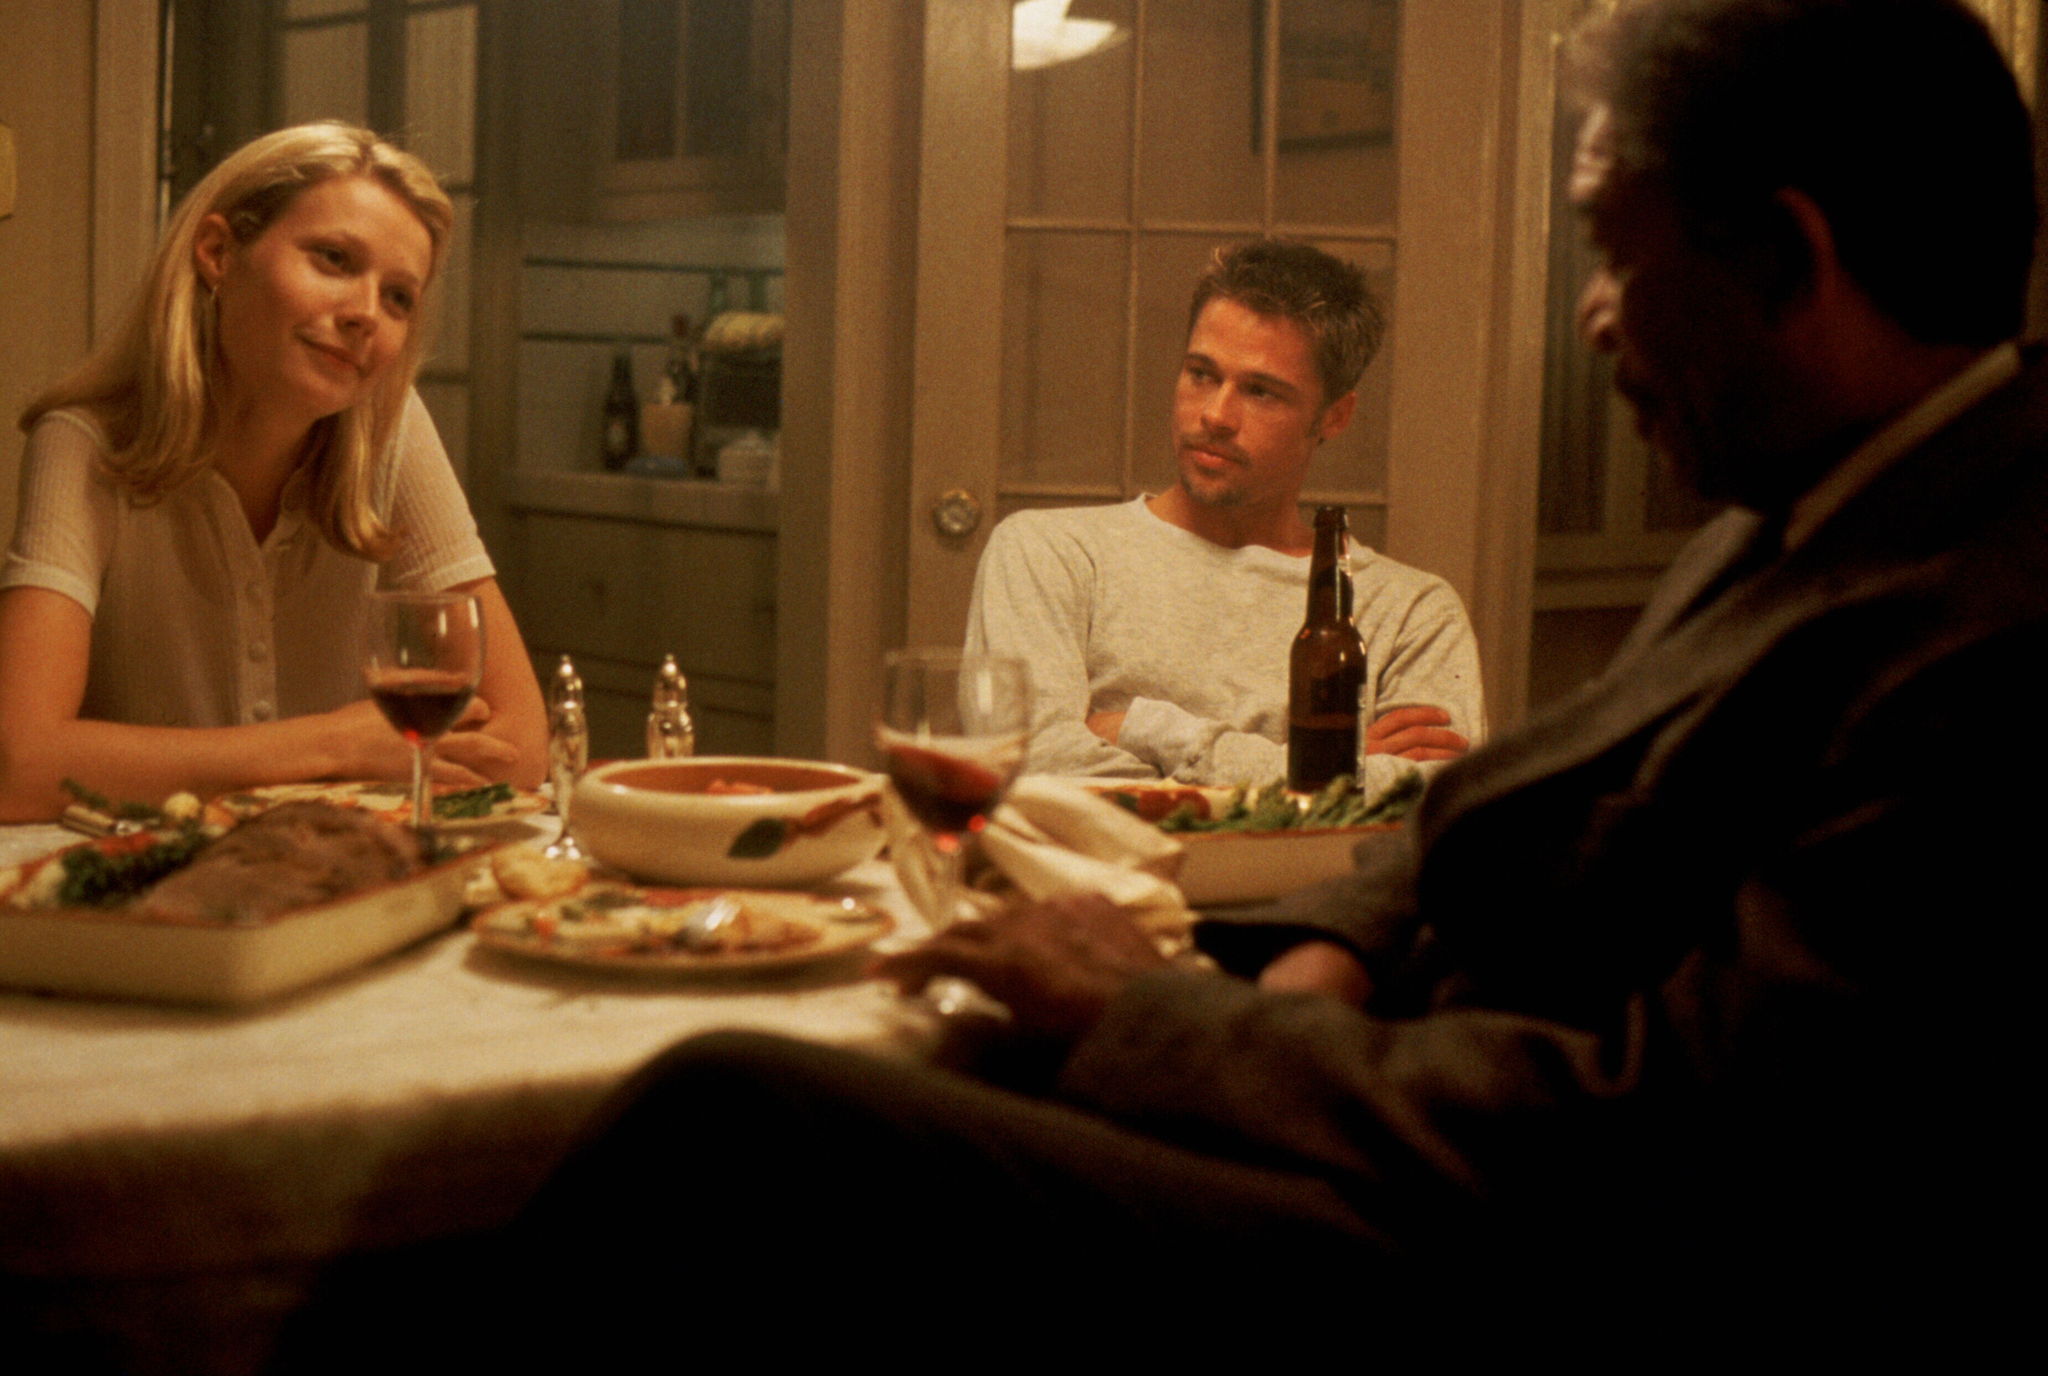 Brad Pitt, Morgan Freeman, and Gwyneth Paltrow in Se7en (1995)